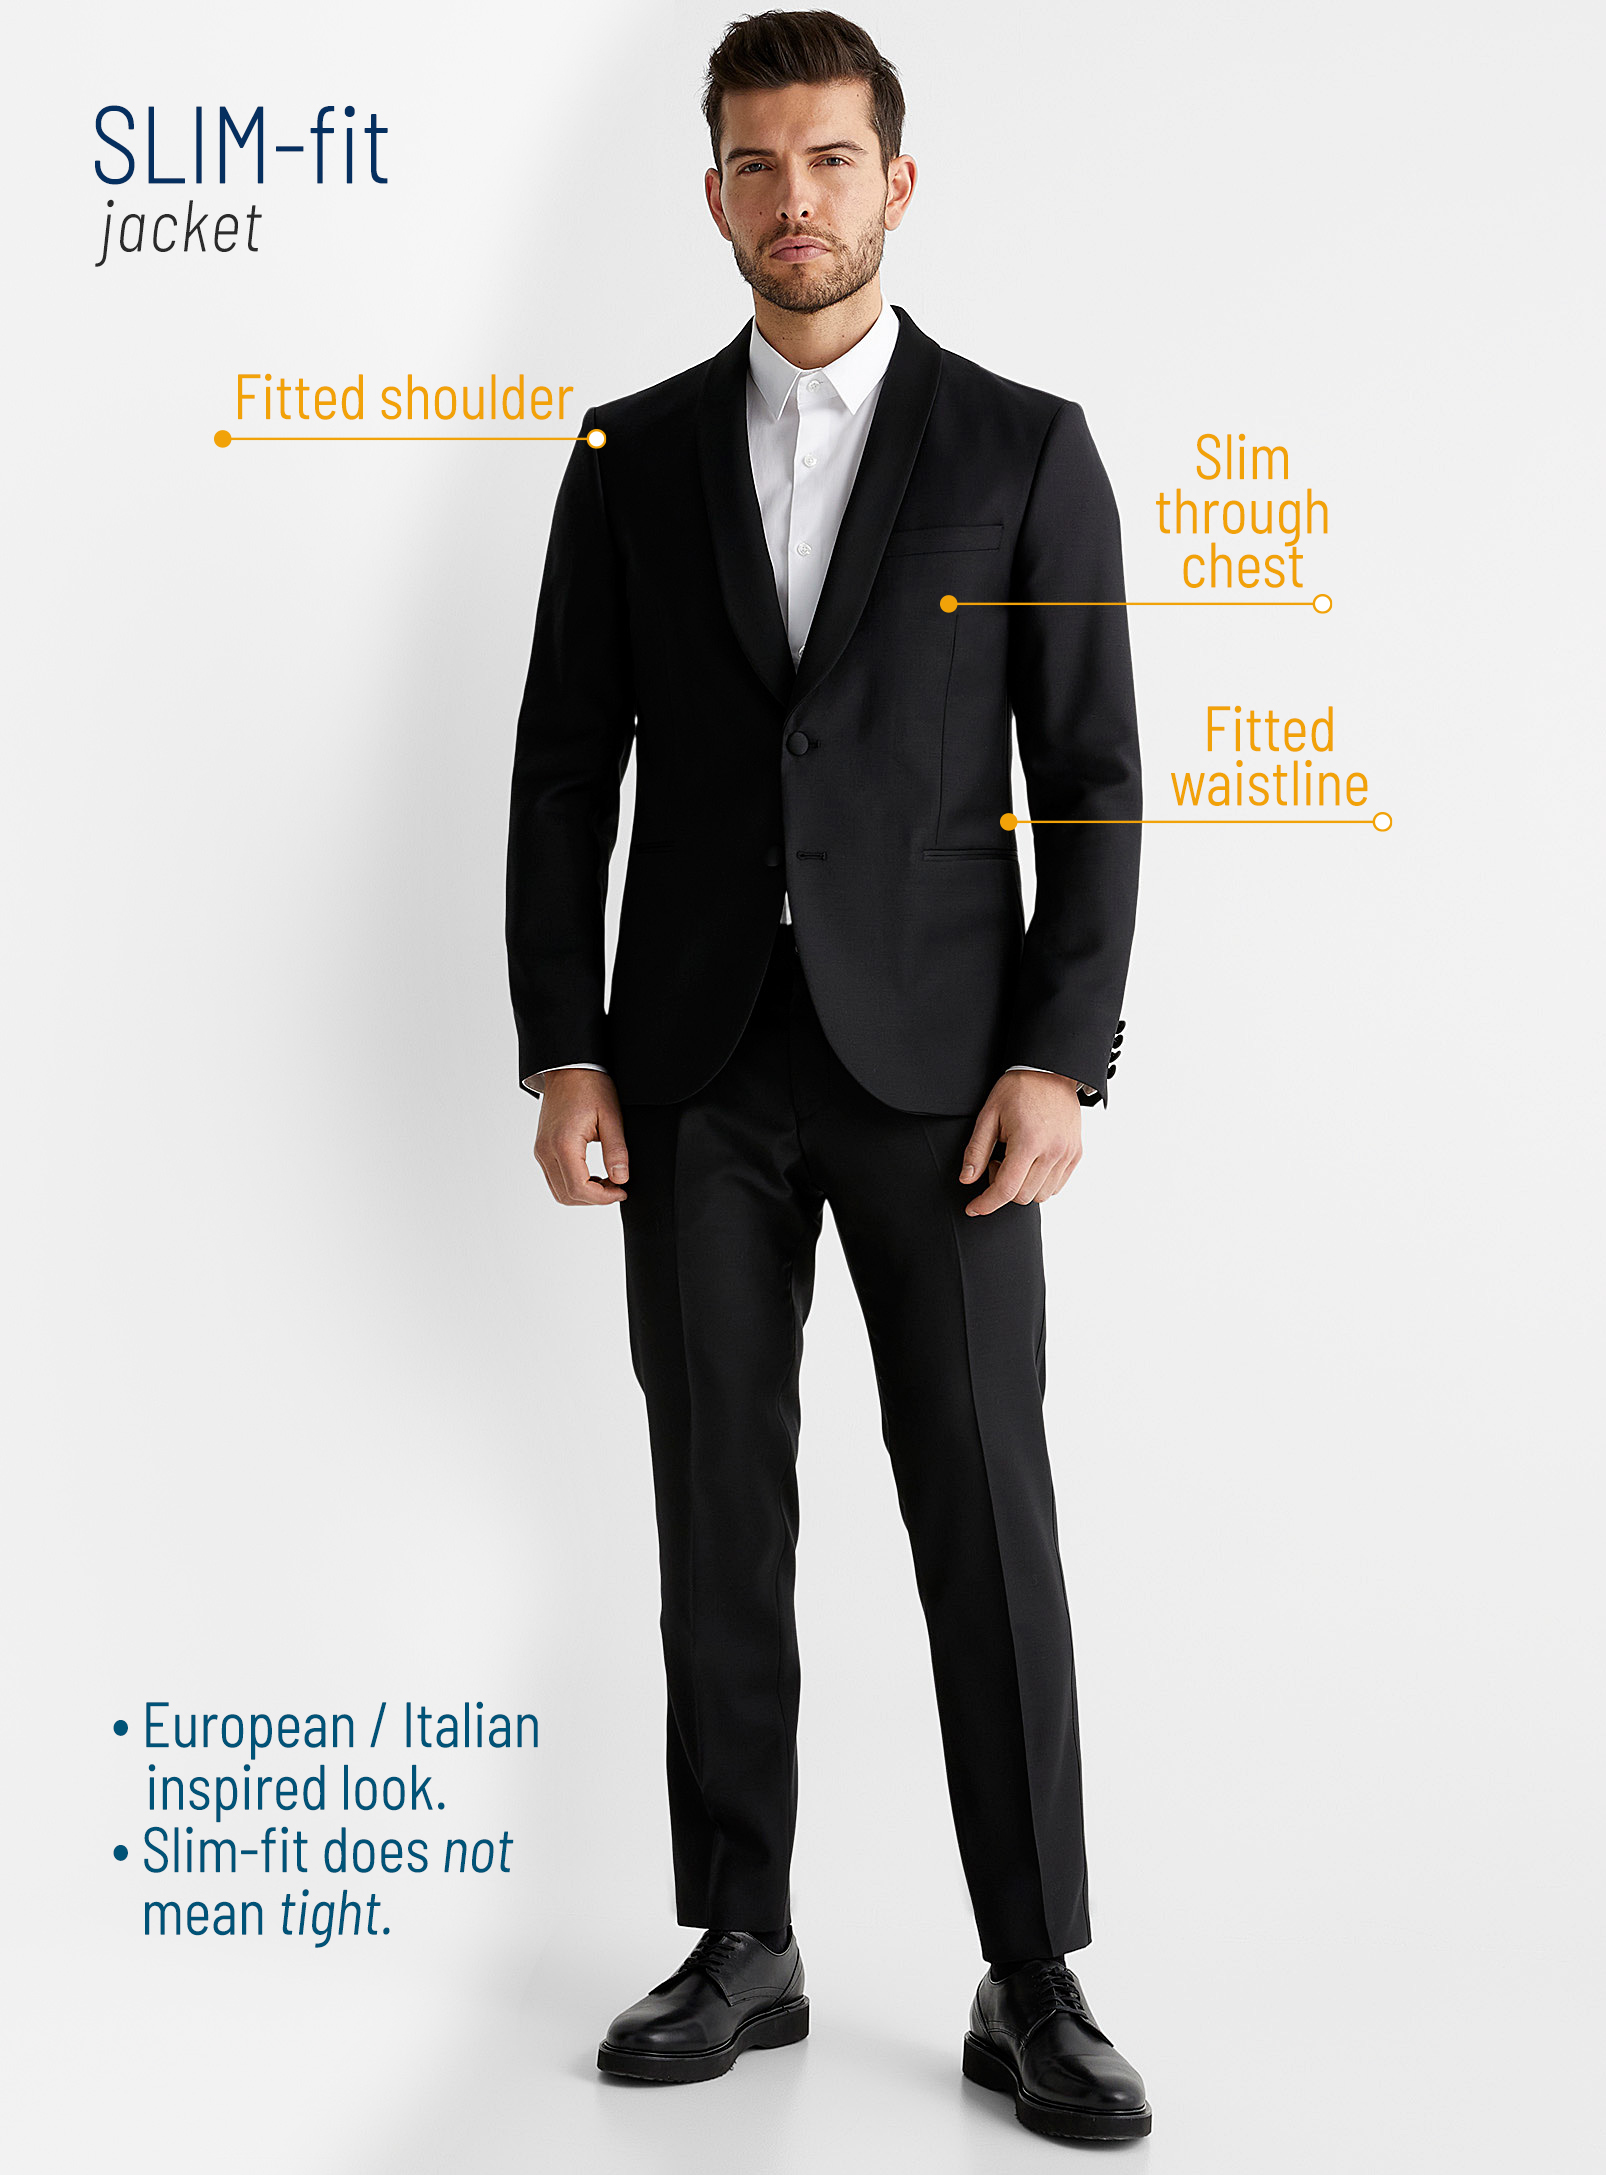 Slim-fit suit jacket features